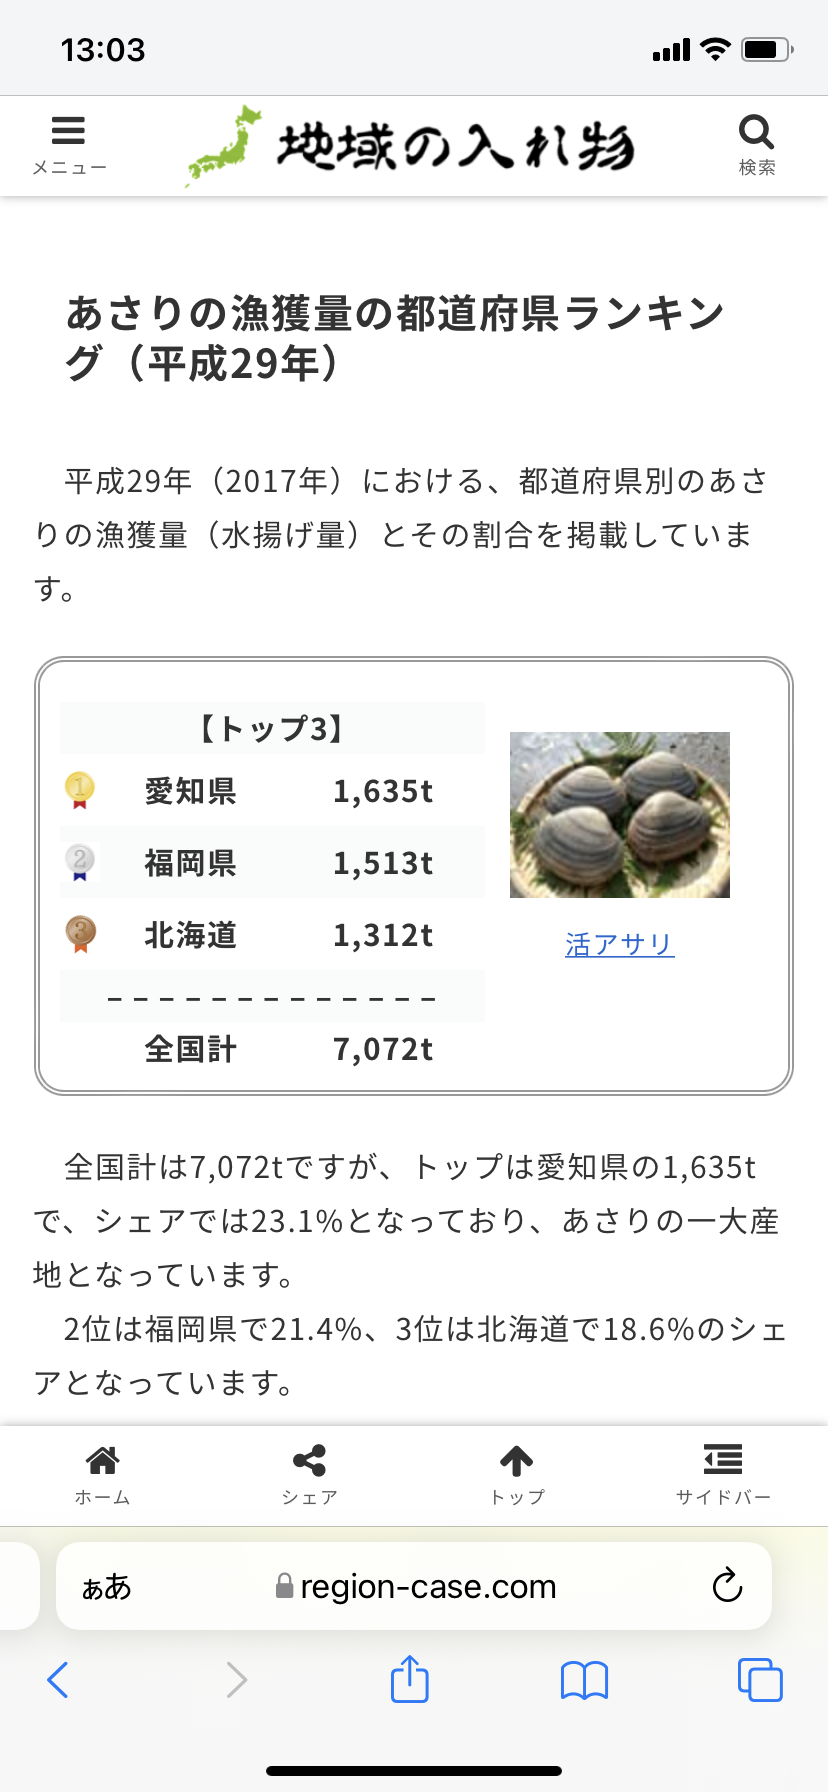 【悲報】北海道産のアサリがなぜか急激に値上がりしてしまうwwwwwwwwwwwwwwwwww\n_1